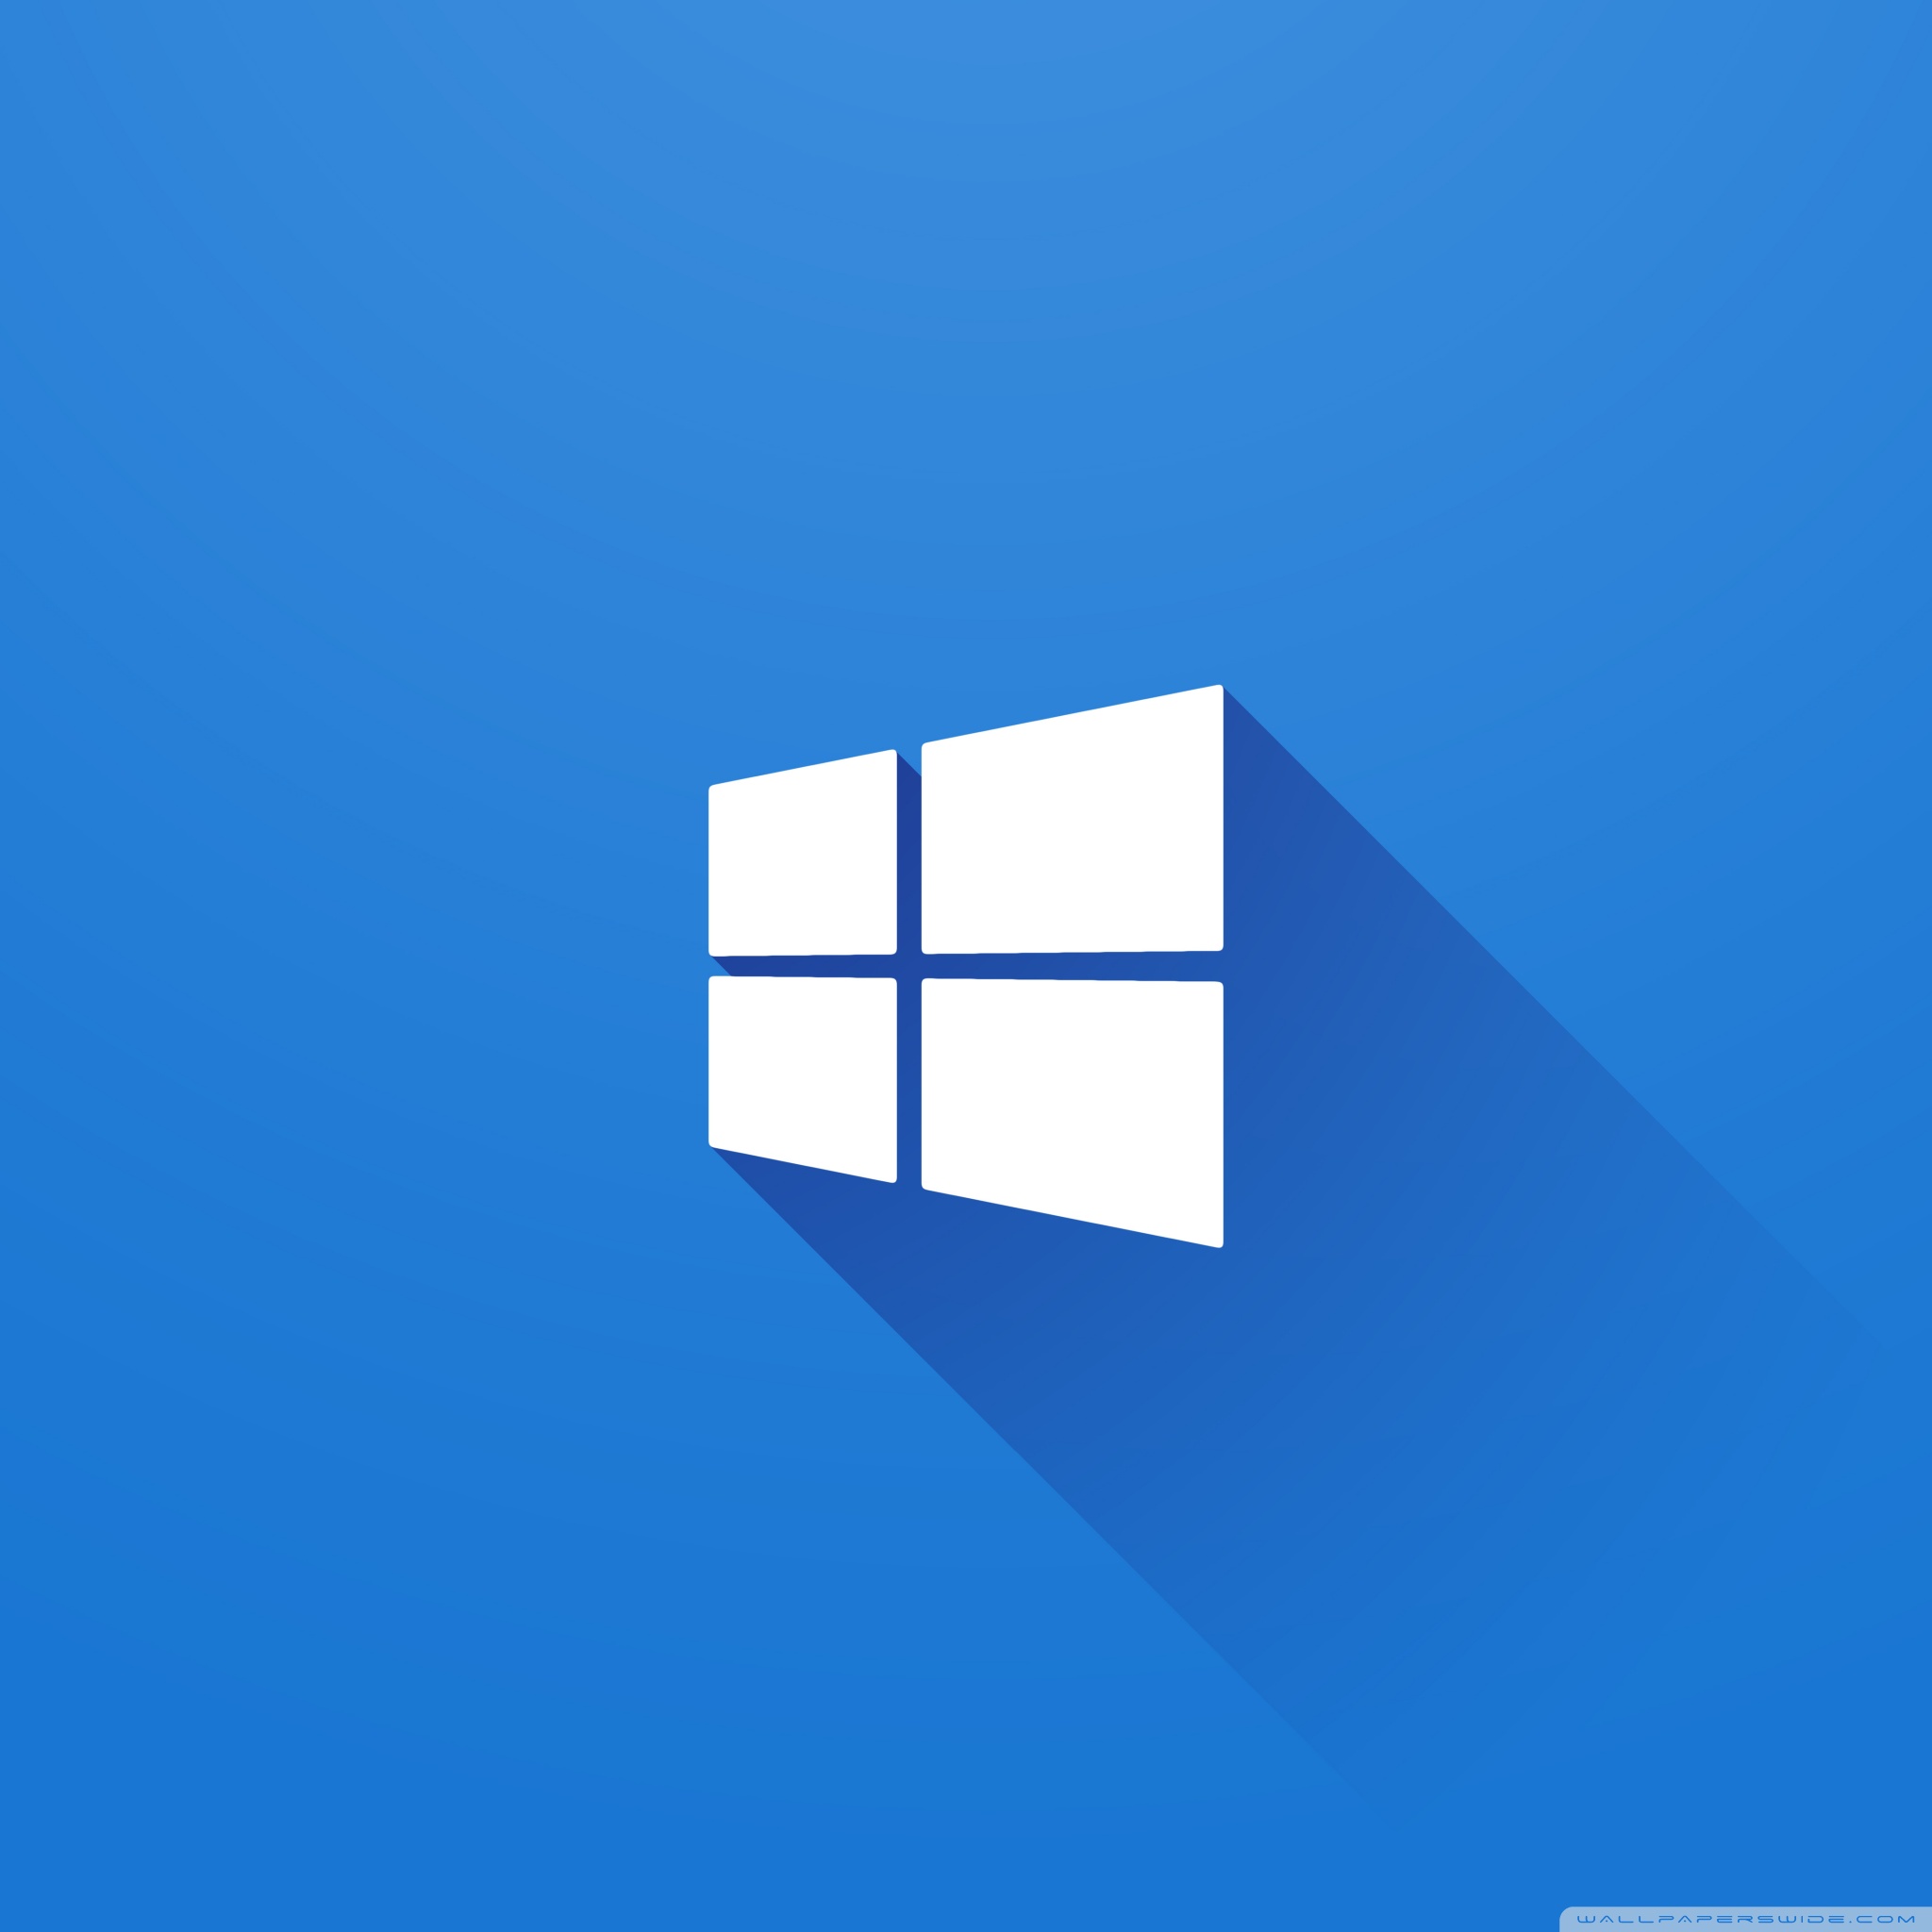 Windows In Material Design - HD Wallpaper 